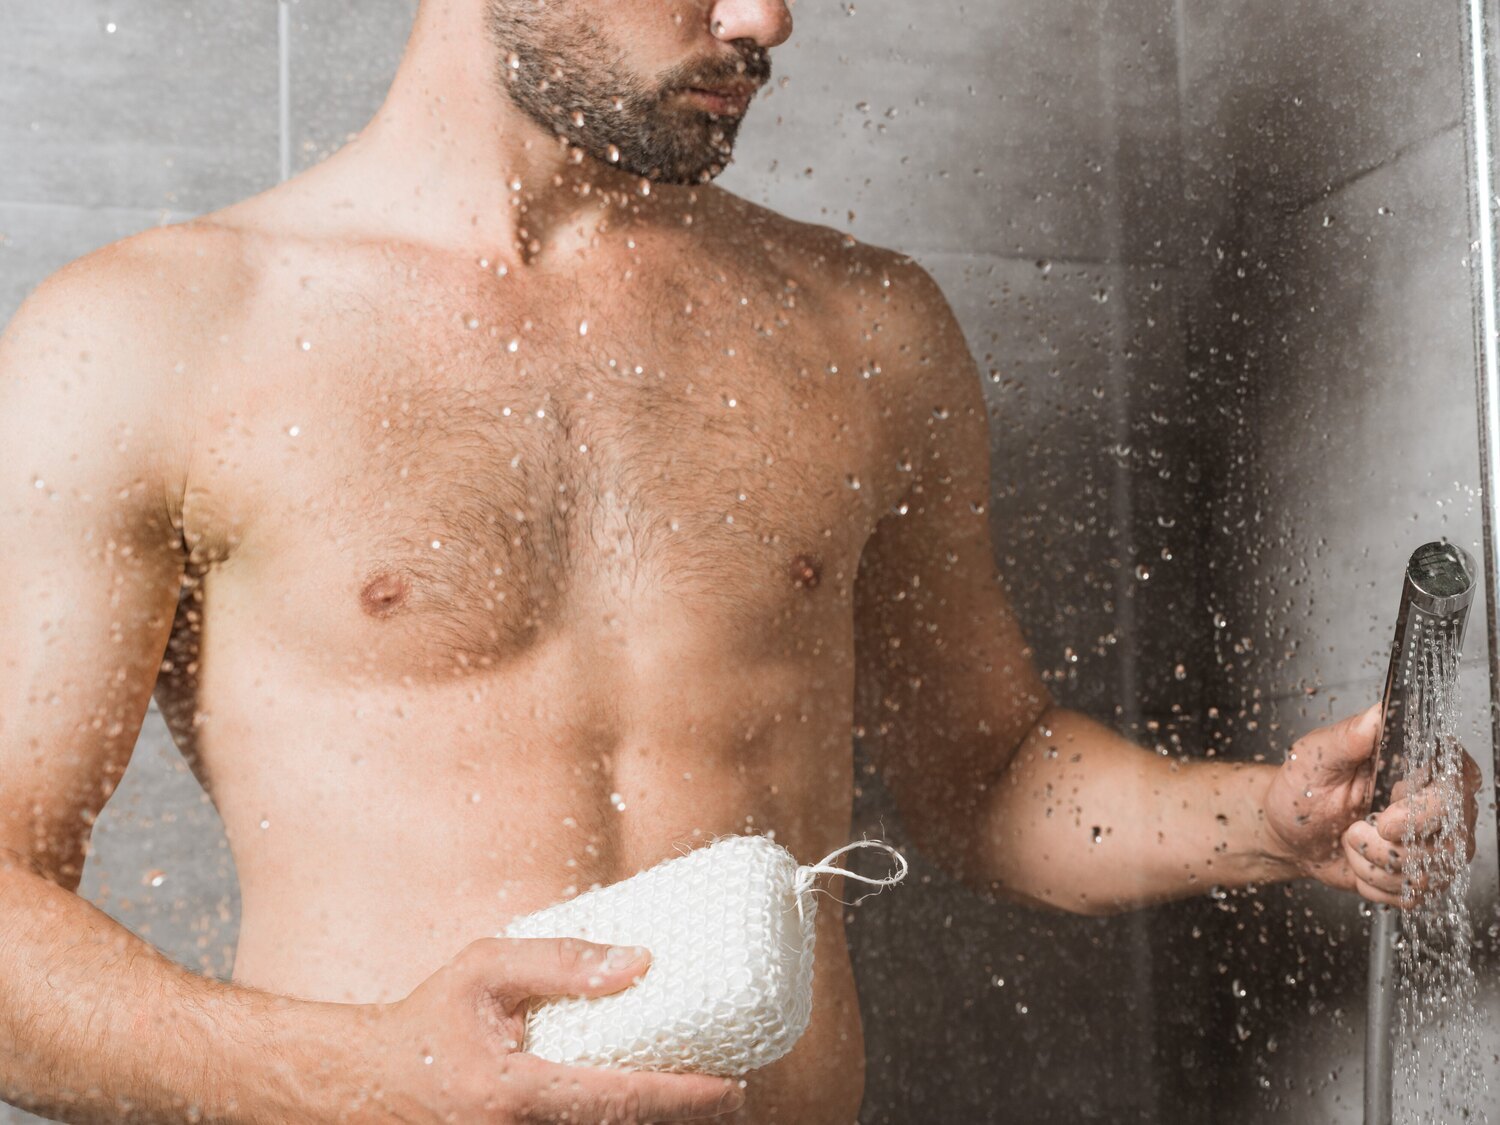 El 20% de los hombres se lava los genitales solo dos veces a la semana, según un estudio